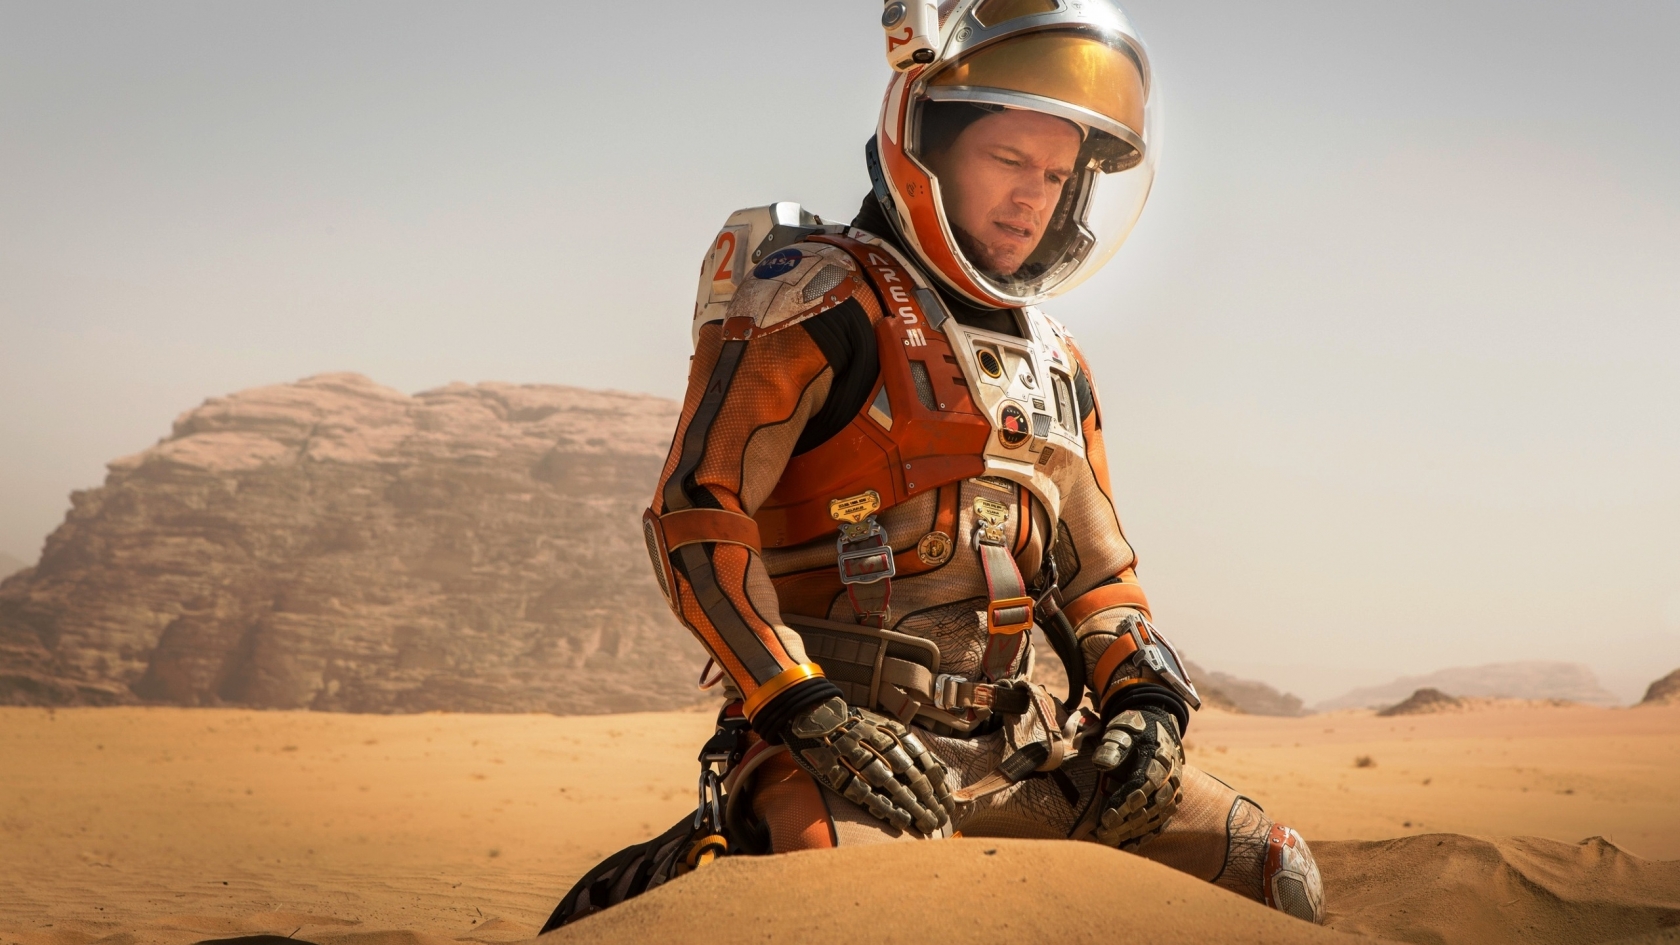 The Martian Matt Damon for 1680 x 945 HDTV resolution